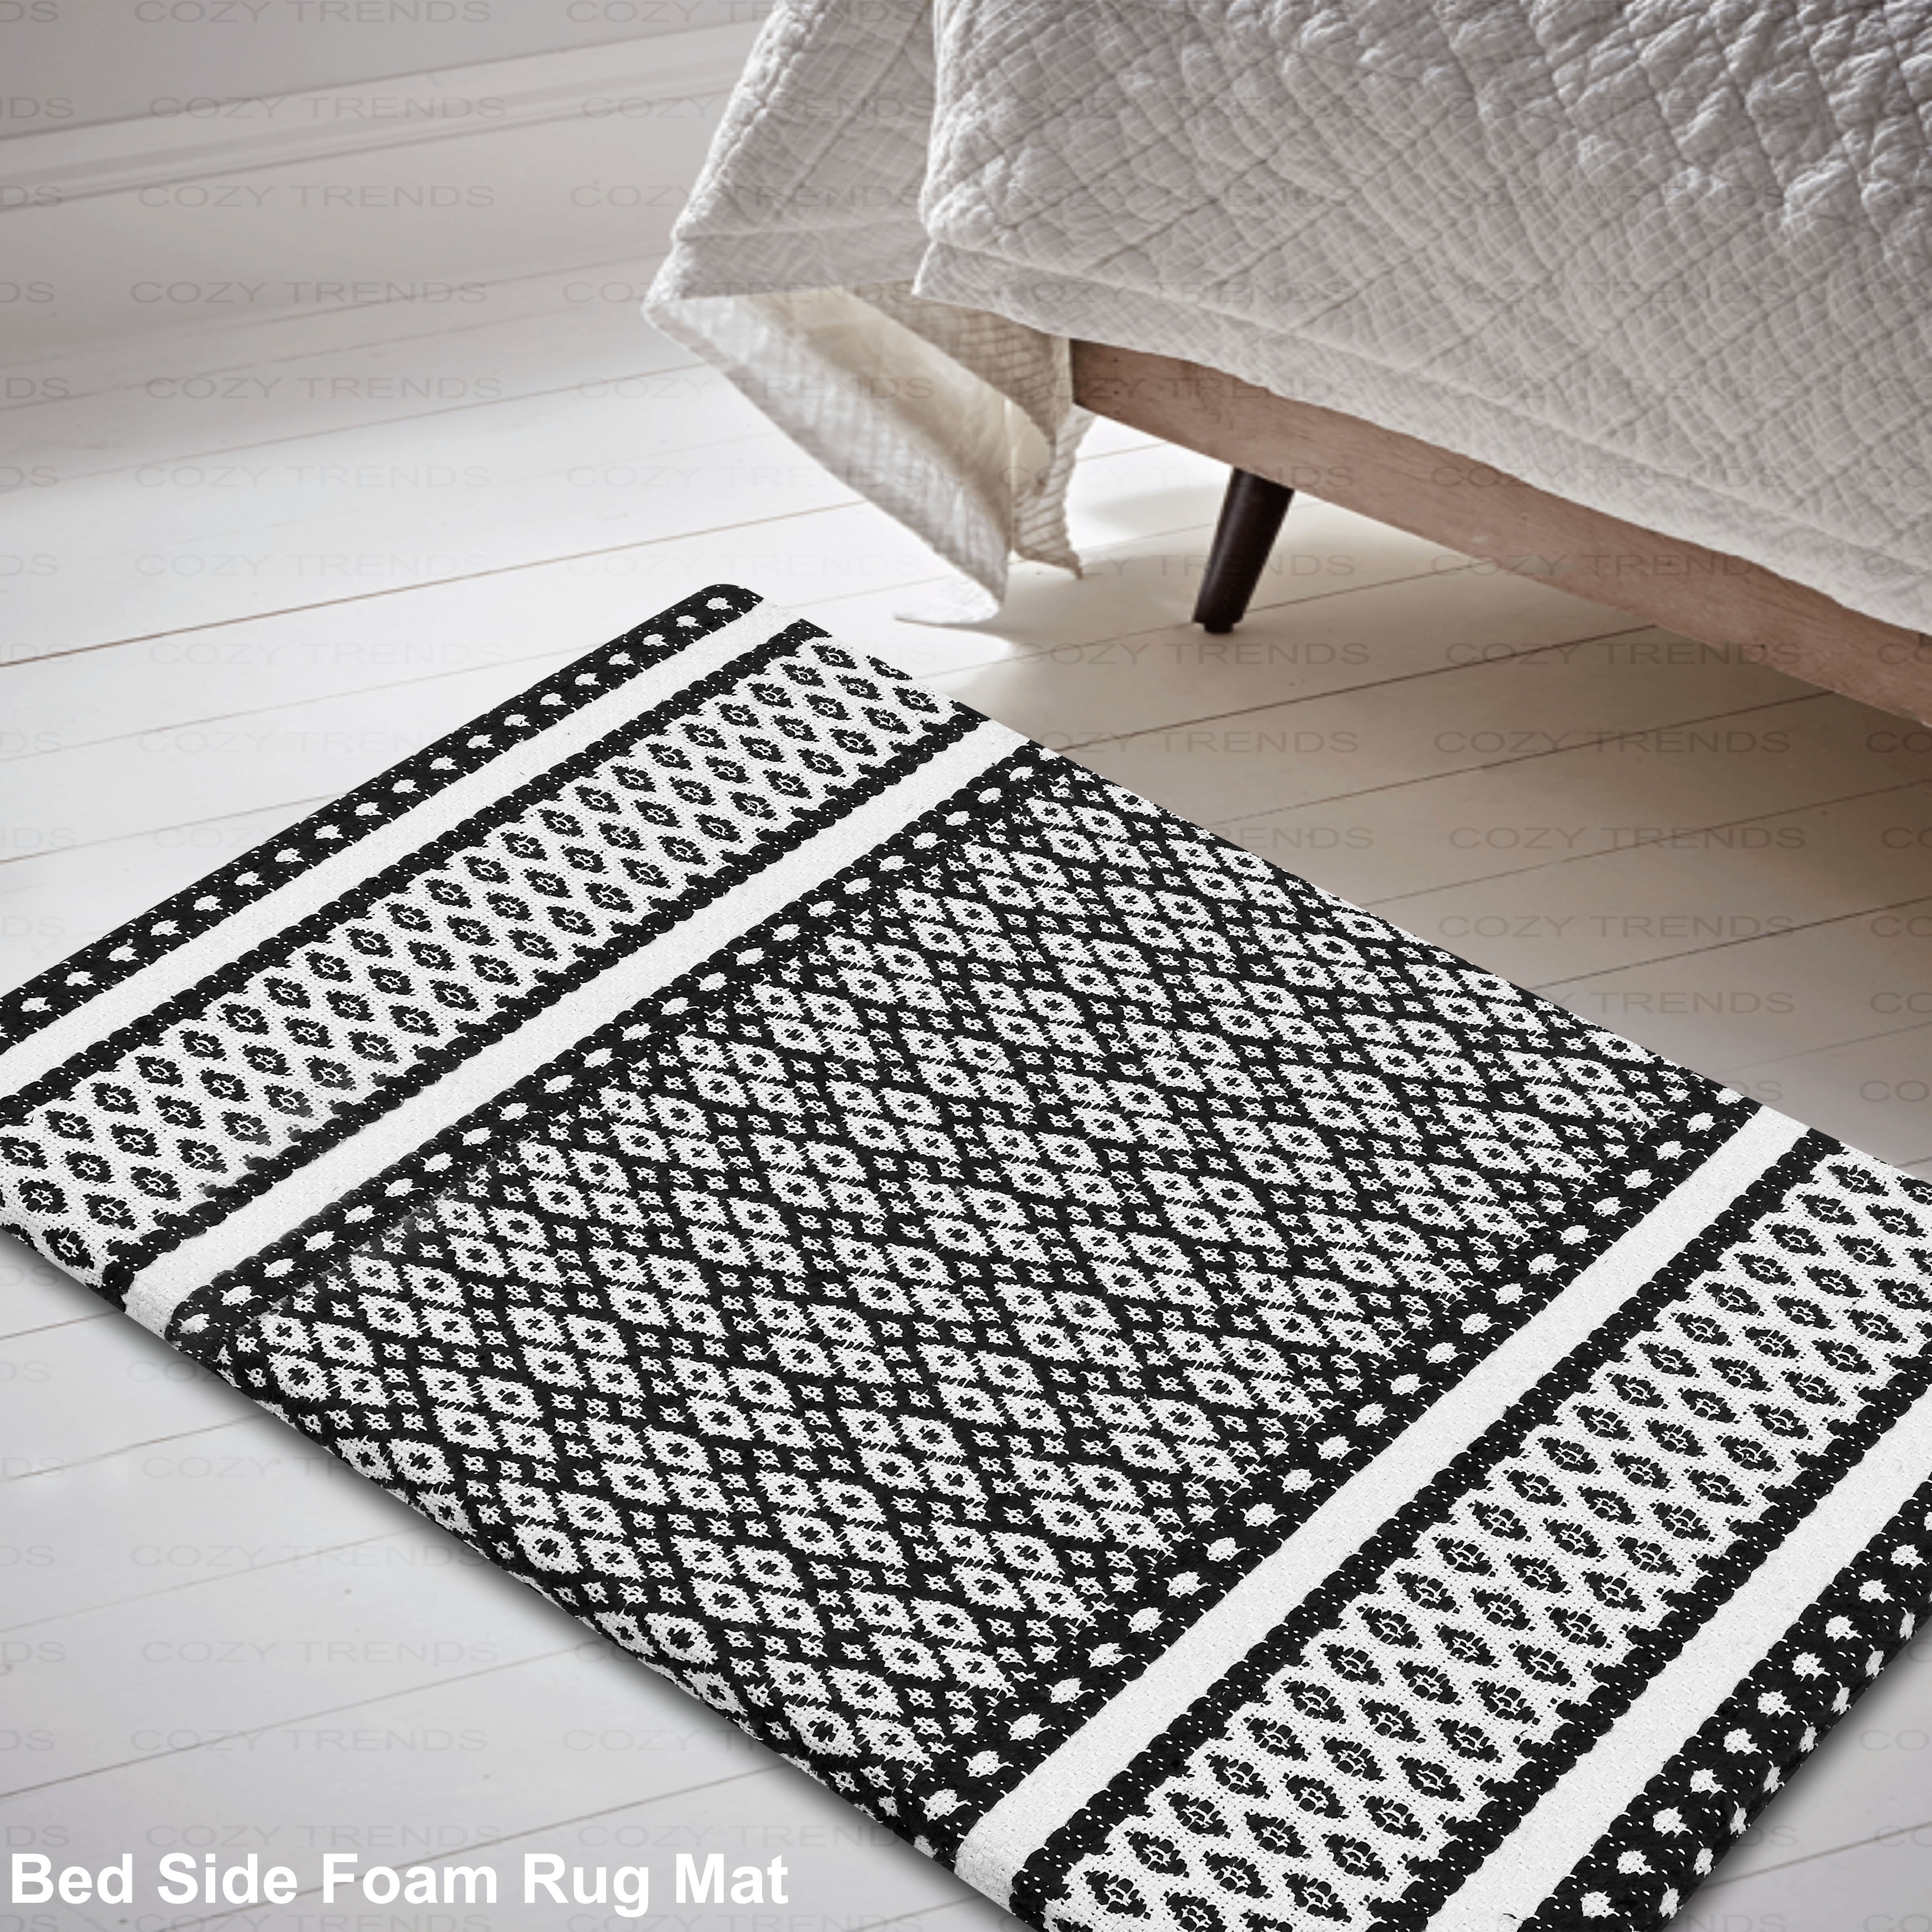 Hesroicy Kitchen Mat Nordic Style Cartoon Print Waterproof Non-Slip Comfort  Kitchen Floor Mats for Farmhouse